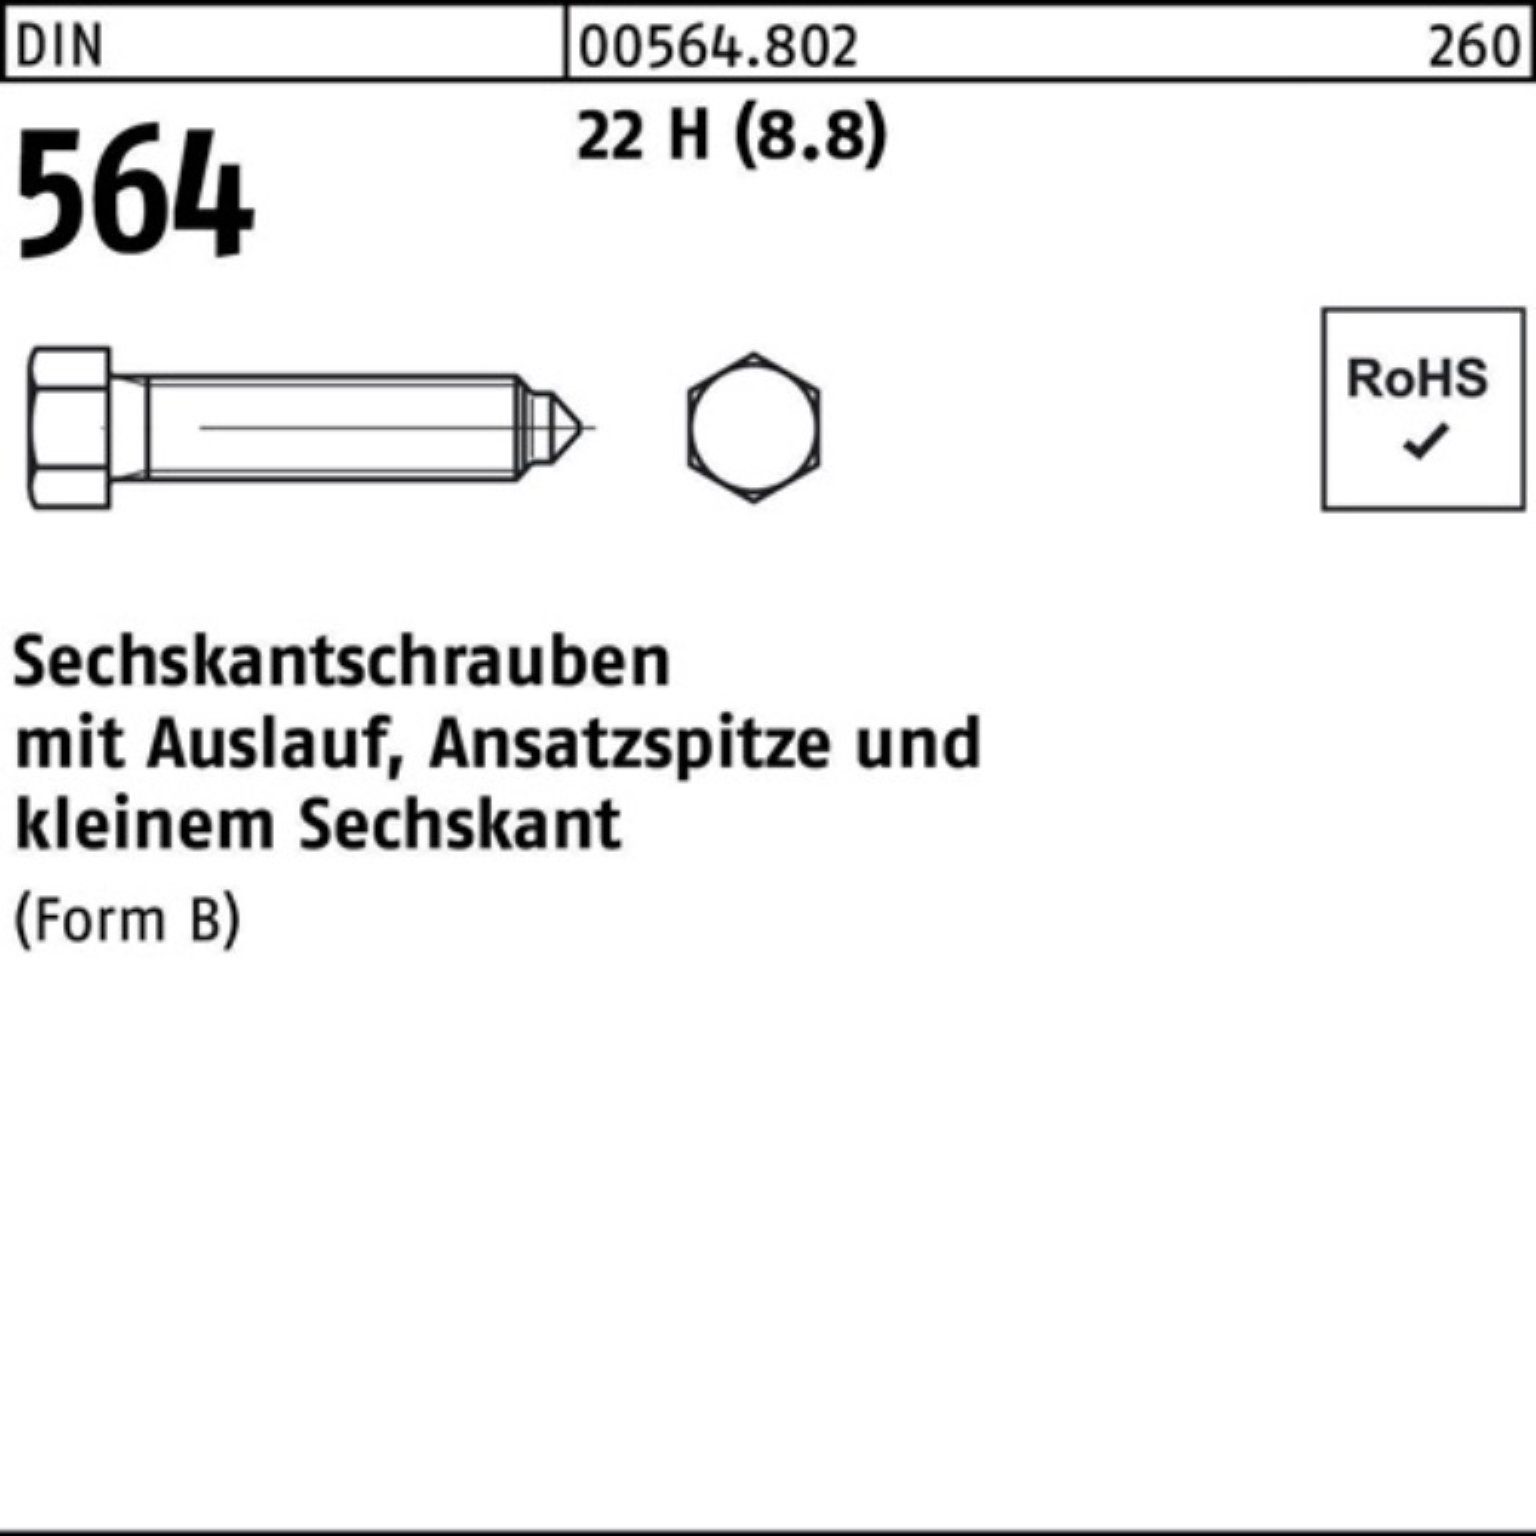 Reyher Sechskantschraube 100er Pack Sechskantschraube DIN 564 Ansatzspitze/Auslauf BM 10x 35 22